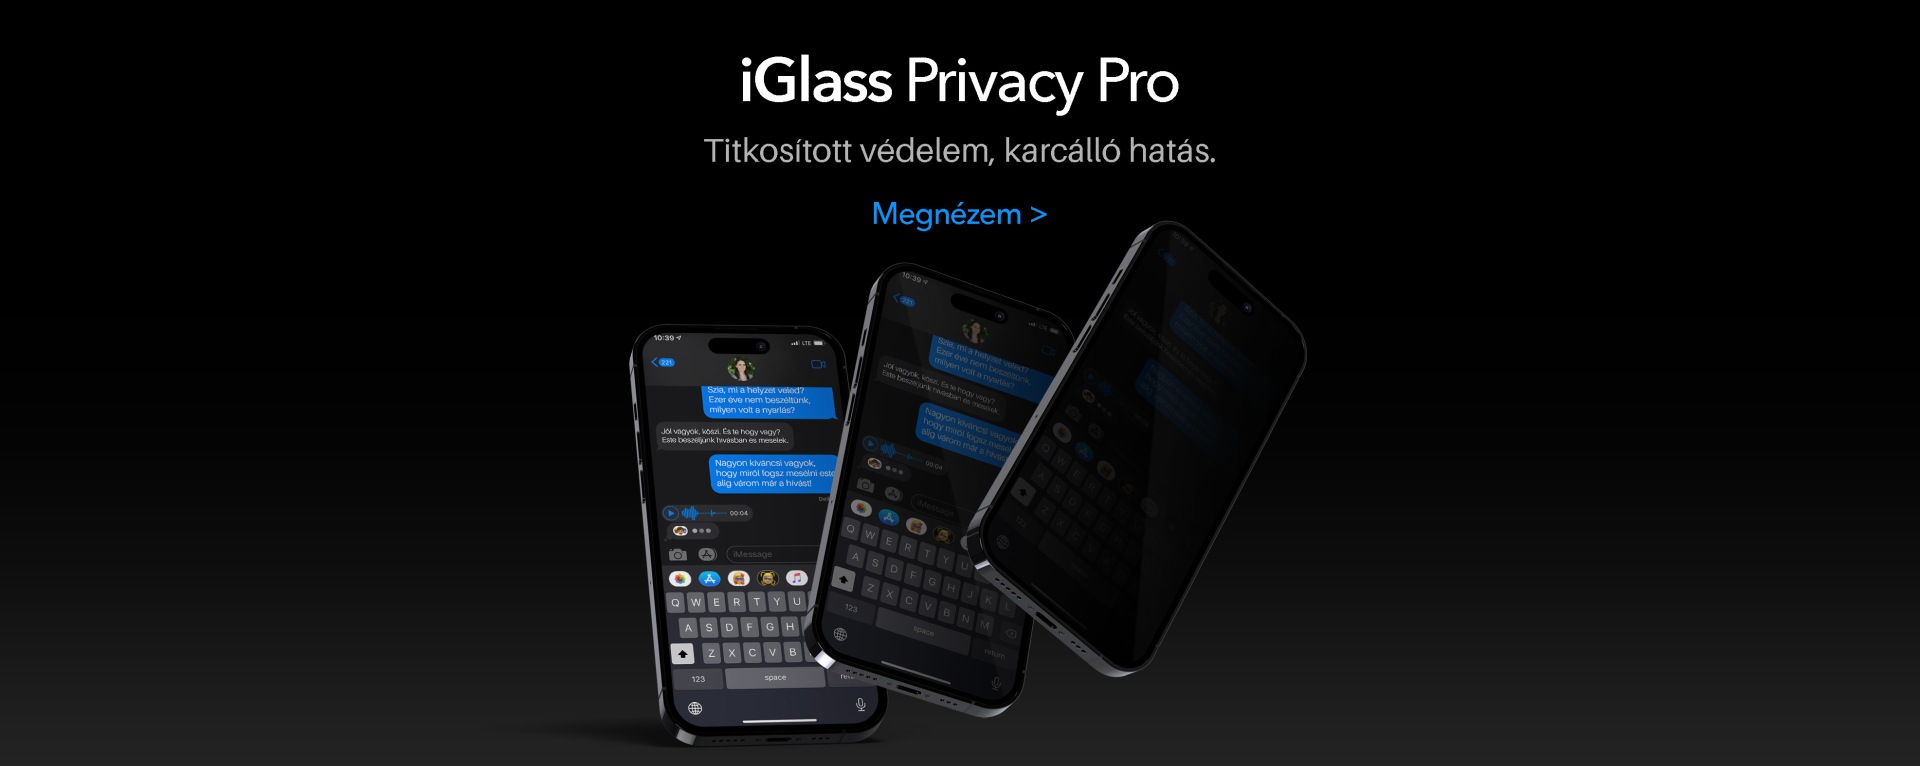 3 iglass privacy pro desktop-iglass-iphone-uvegfolia